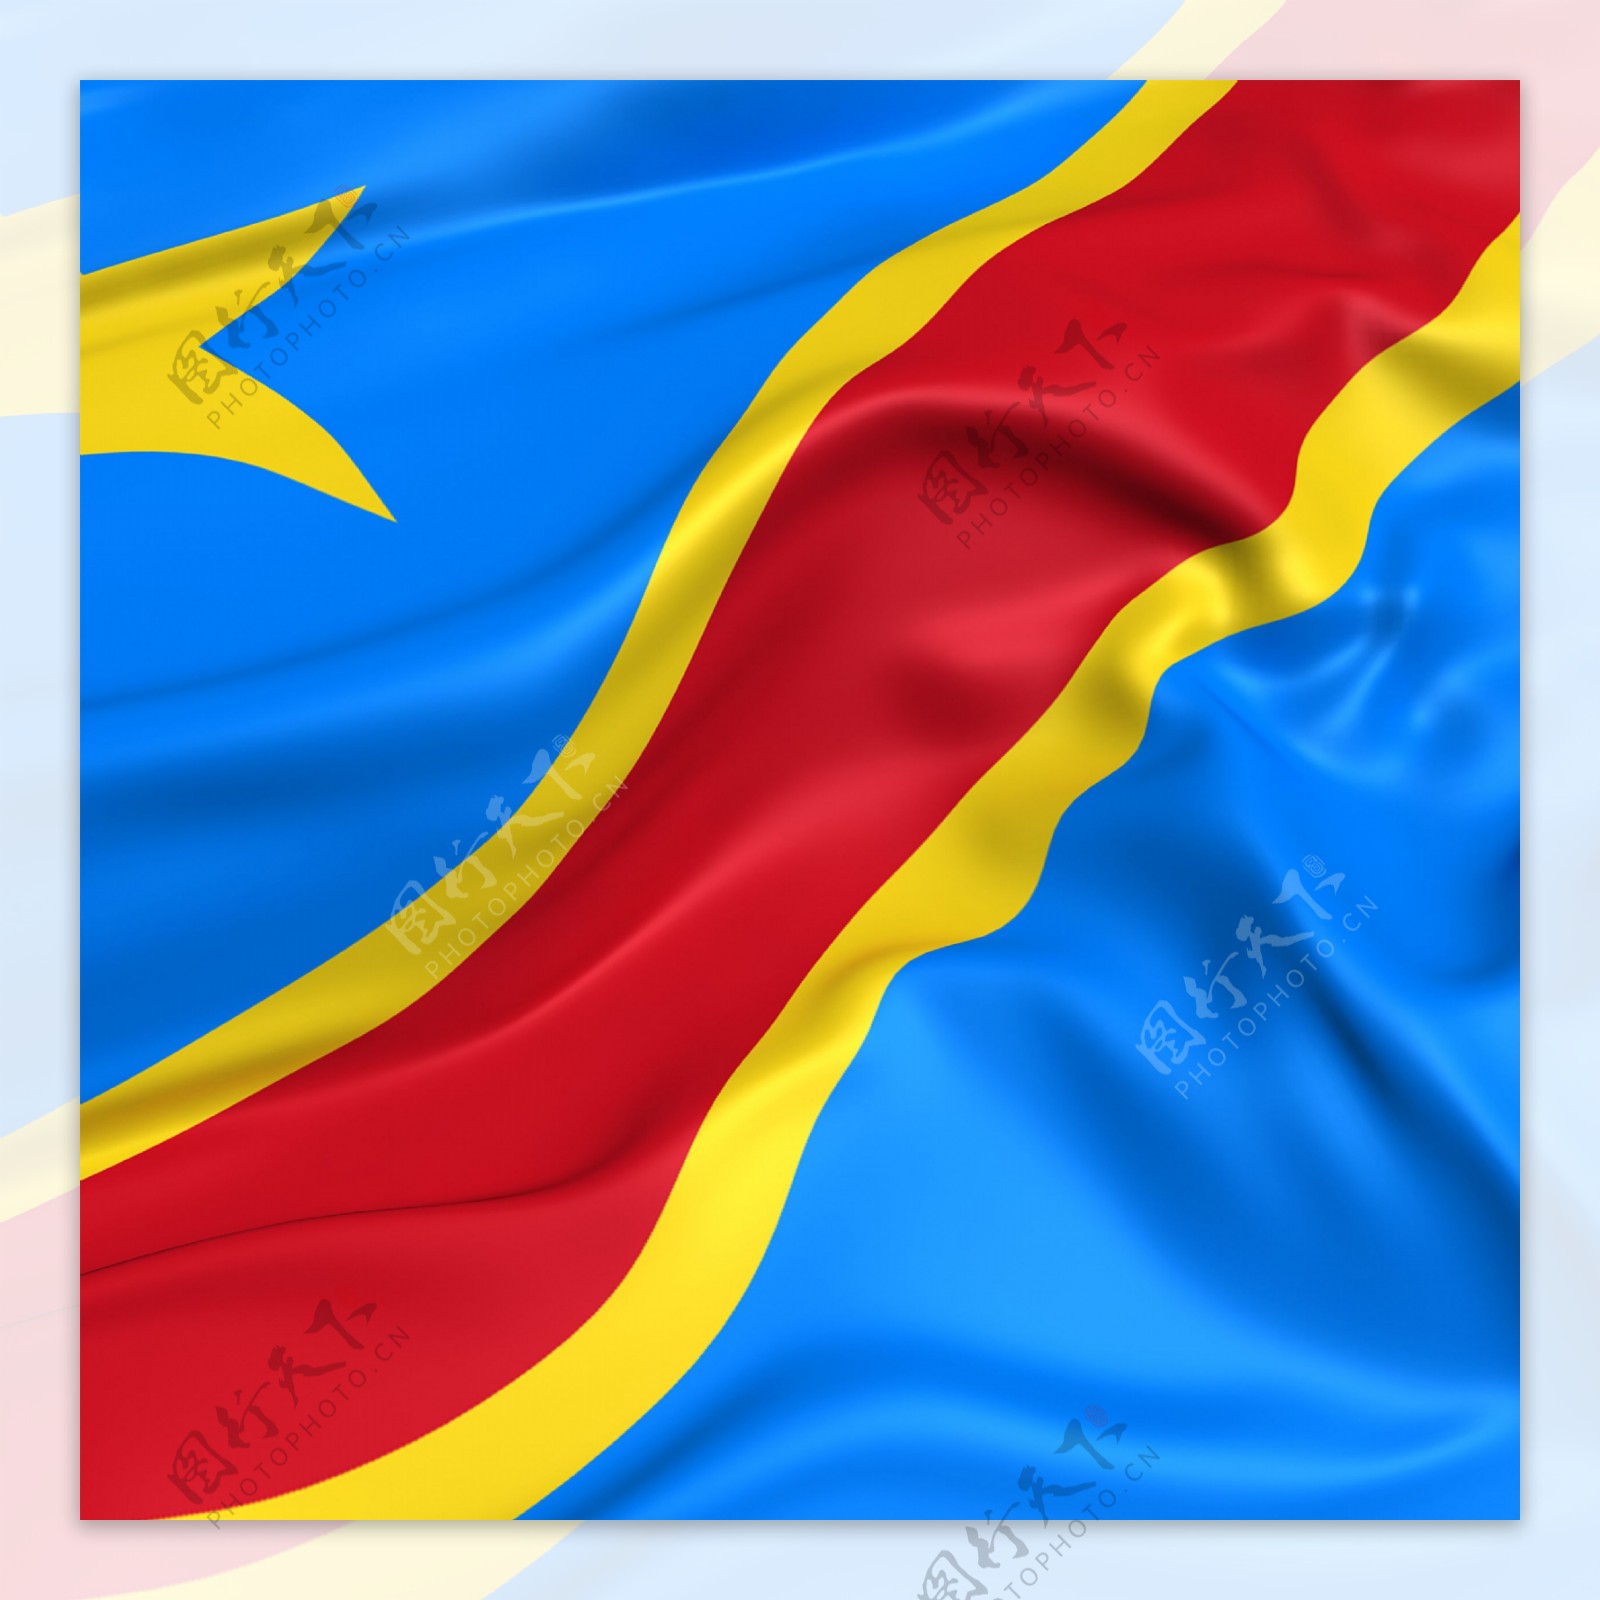 刚果民主共和国的国旗